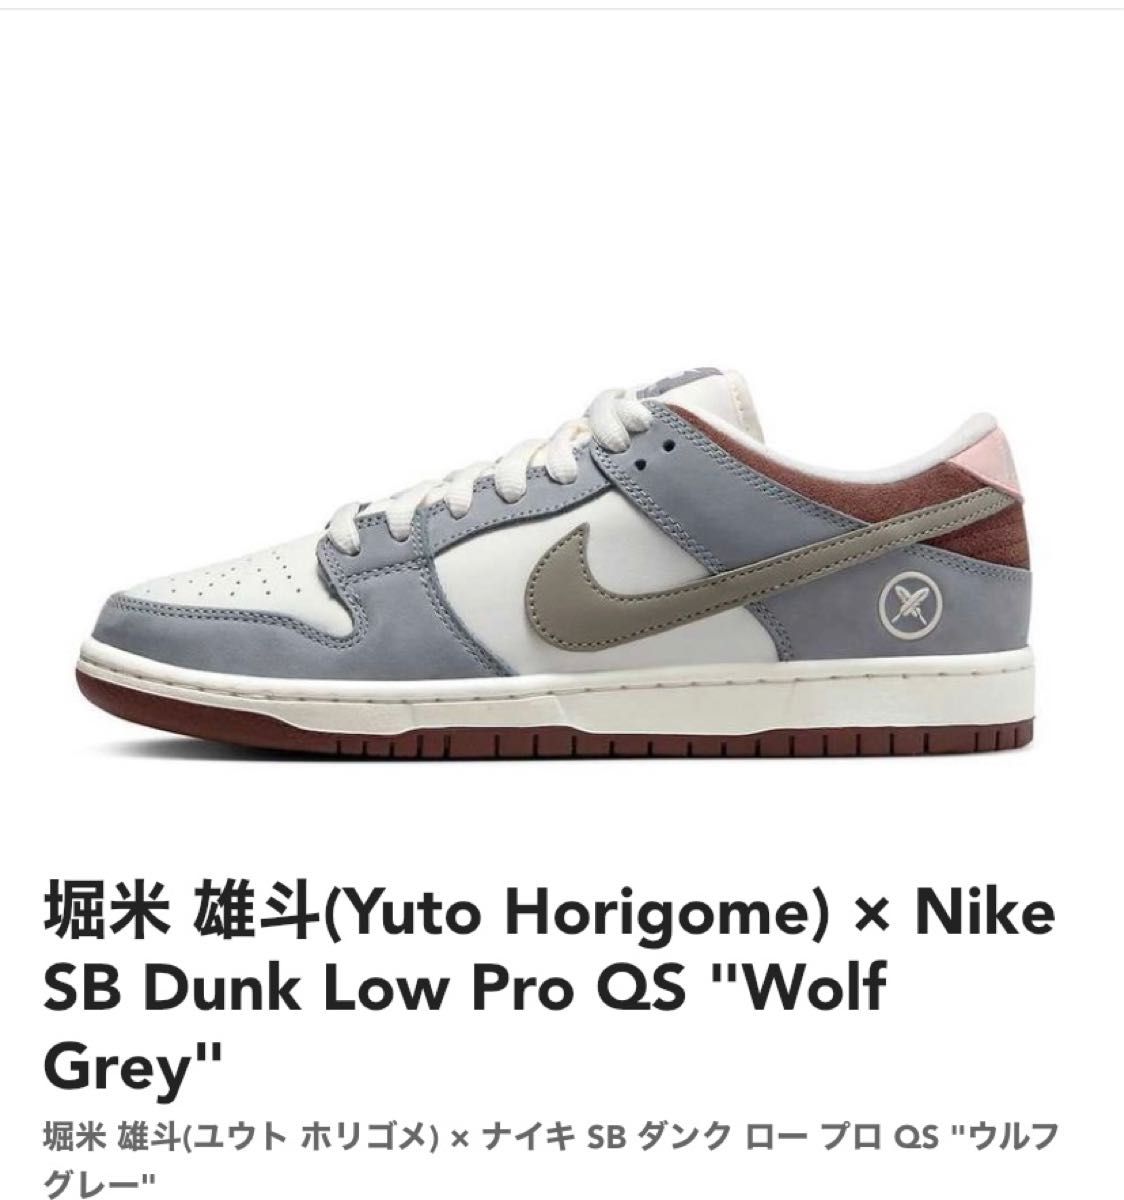 堀米 雄斗(Yuto Horigome) × Nike SB Dunk Low Pro QS 